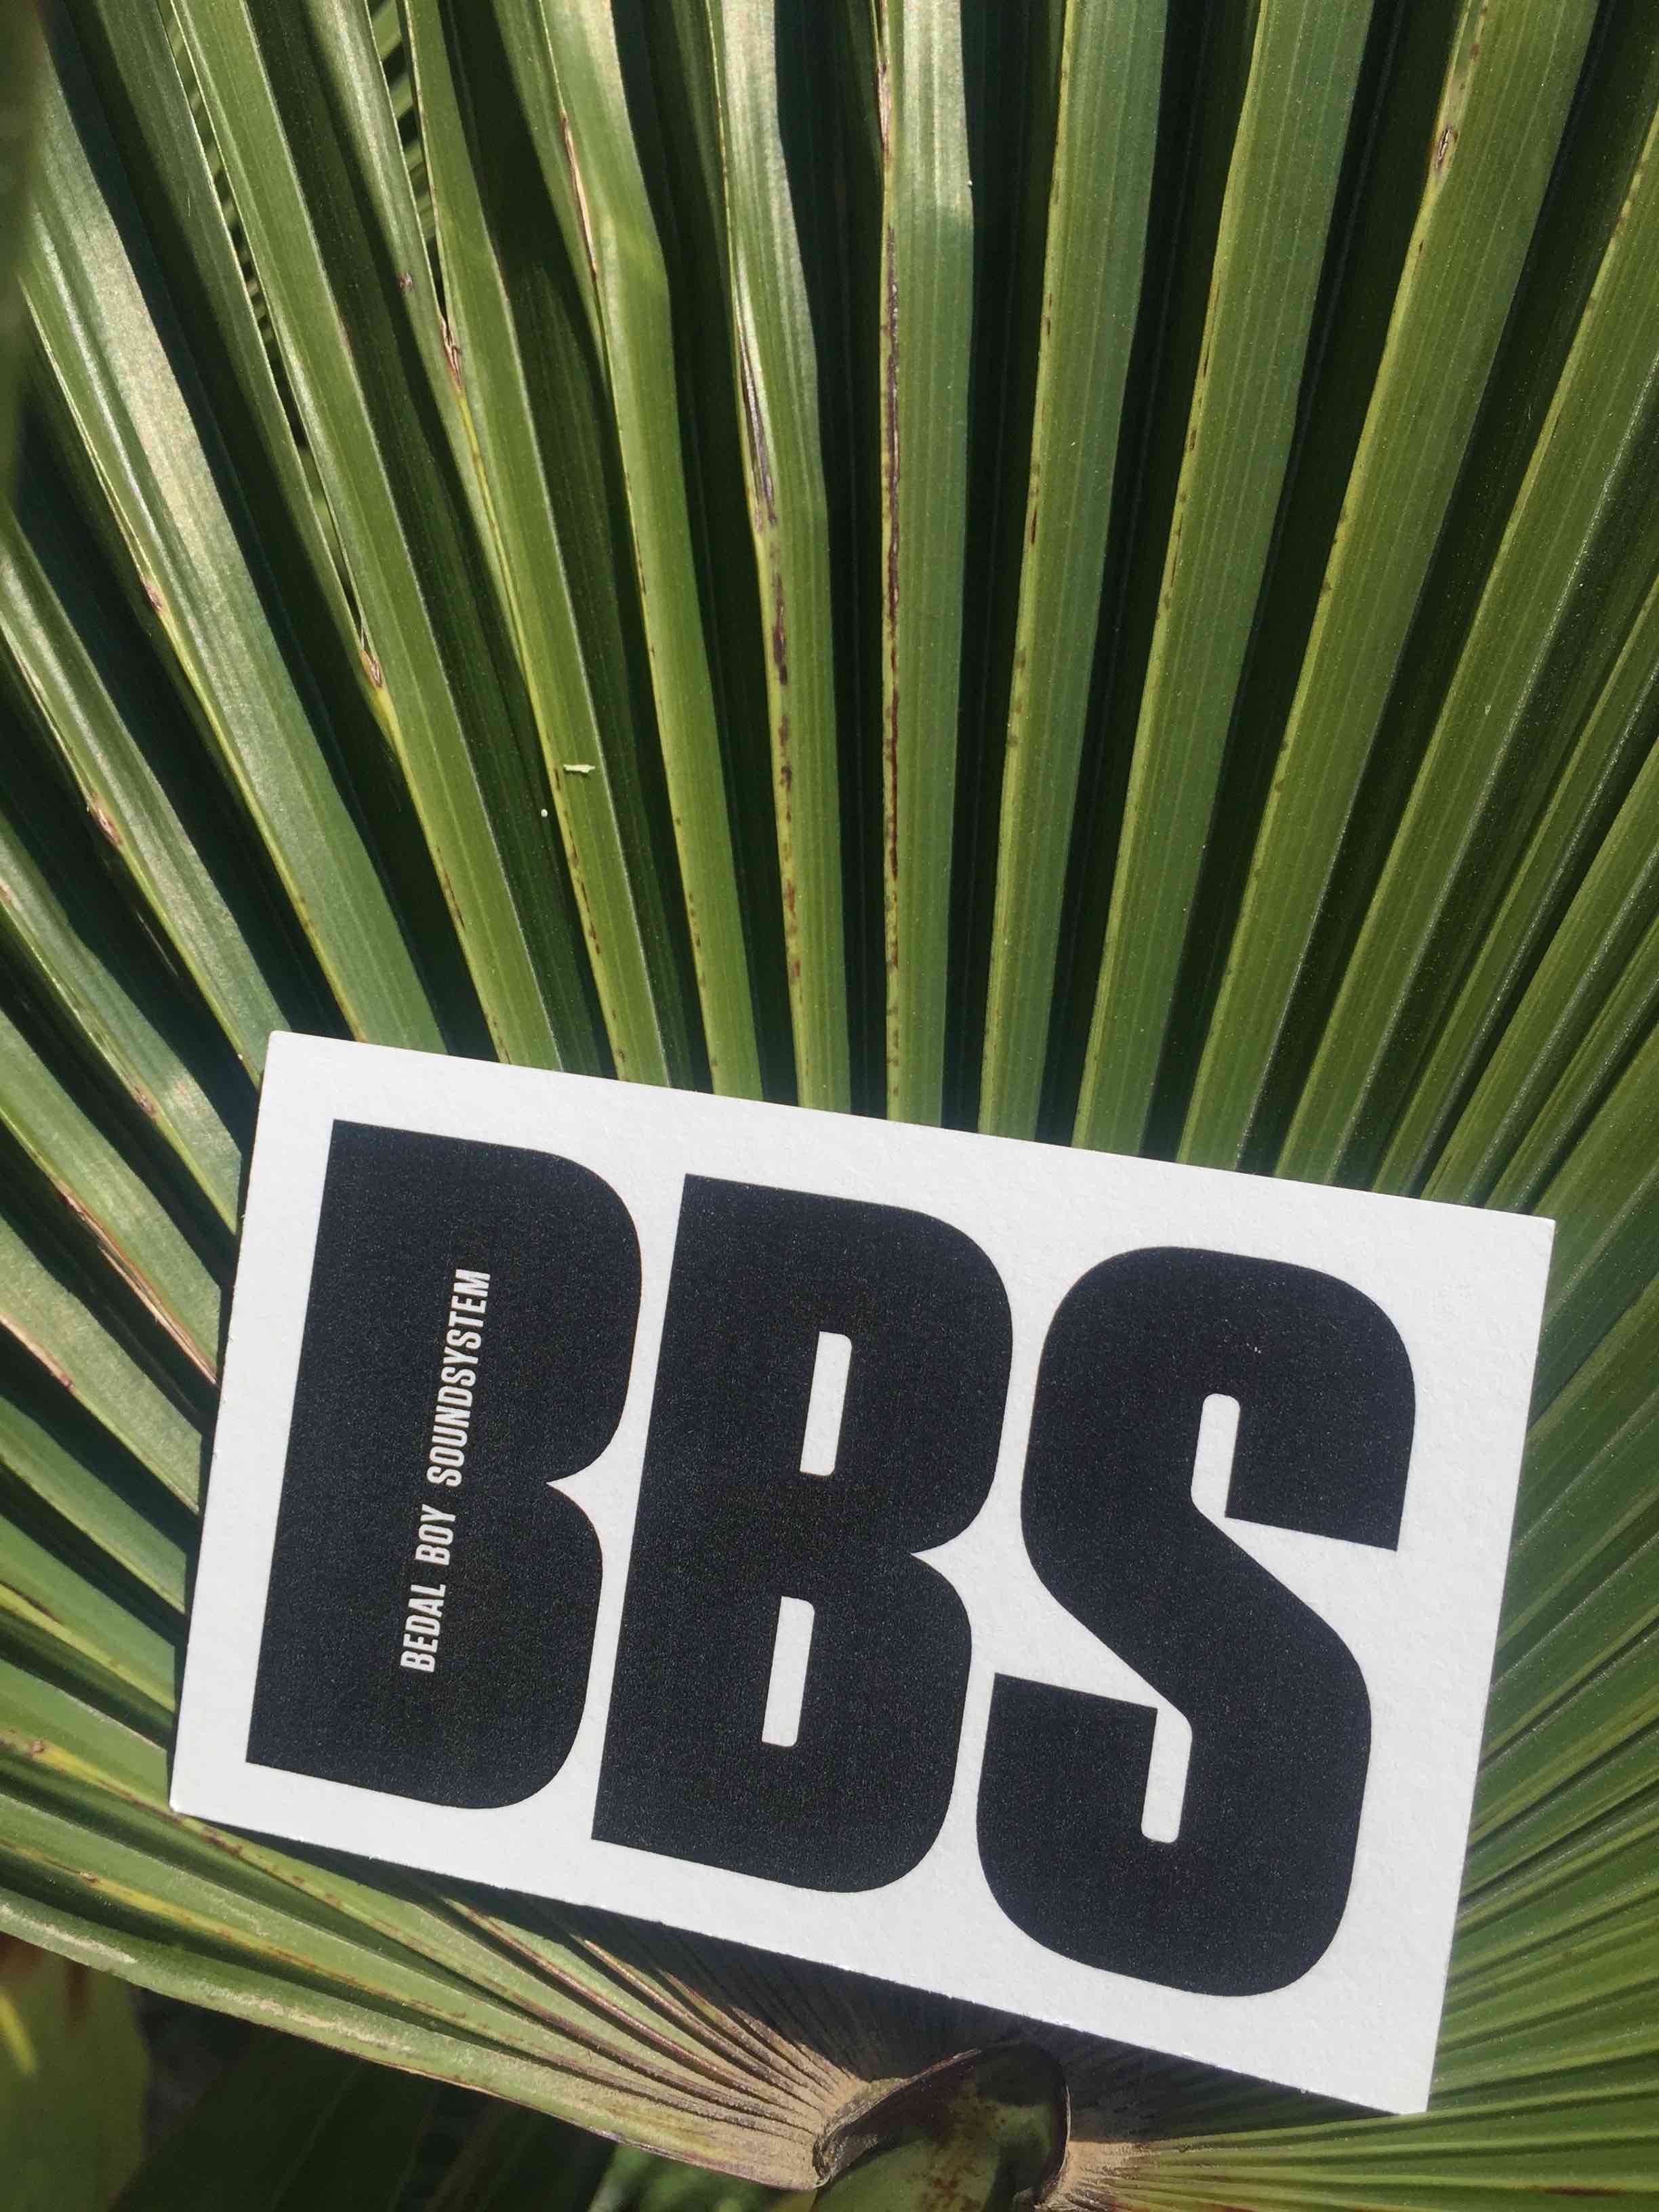 BBS logo on palm leaf